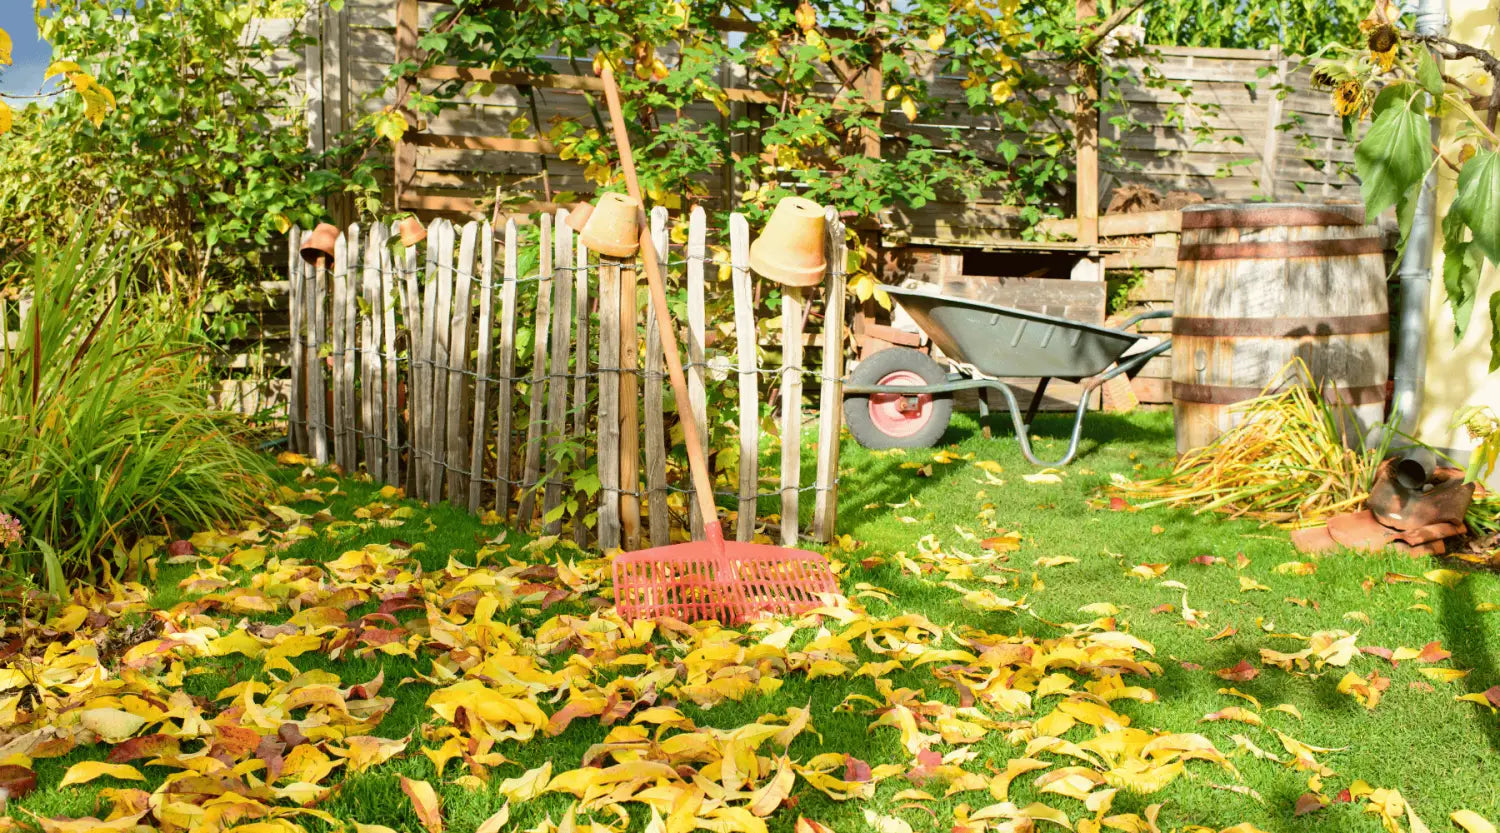 September im Garten: Die Top 5 Prioritäten für den Herbstanfang